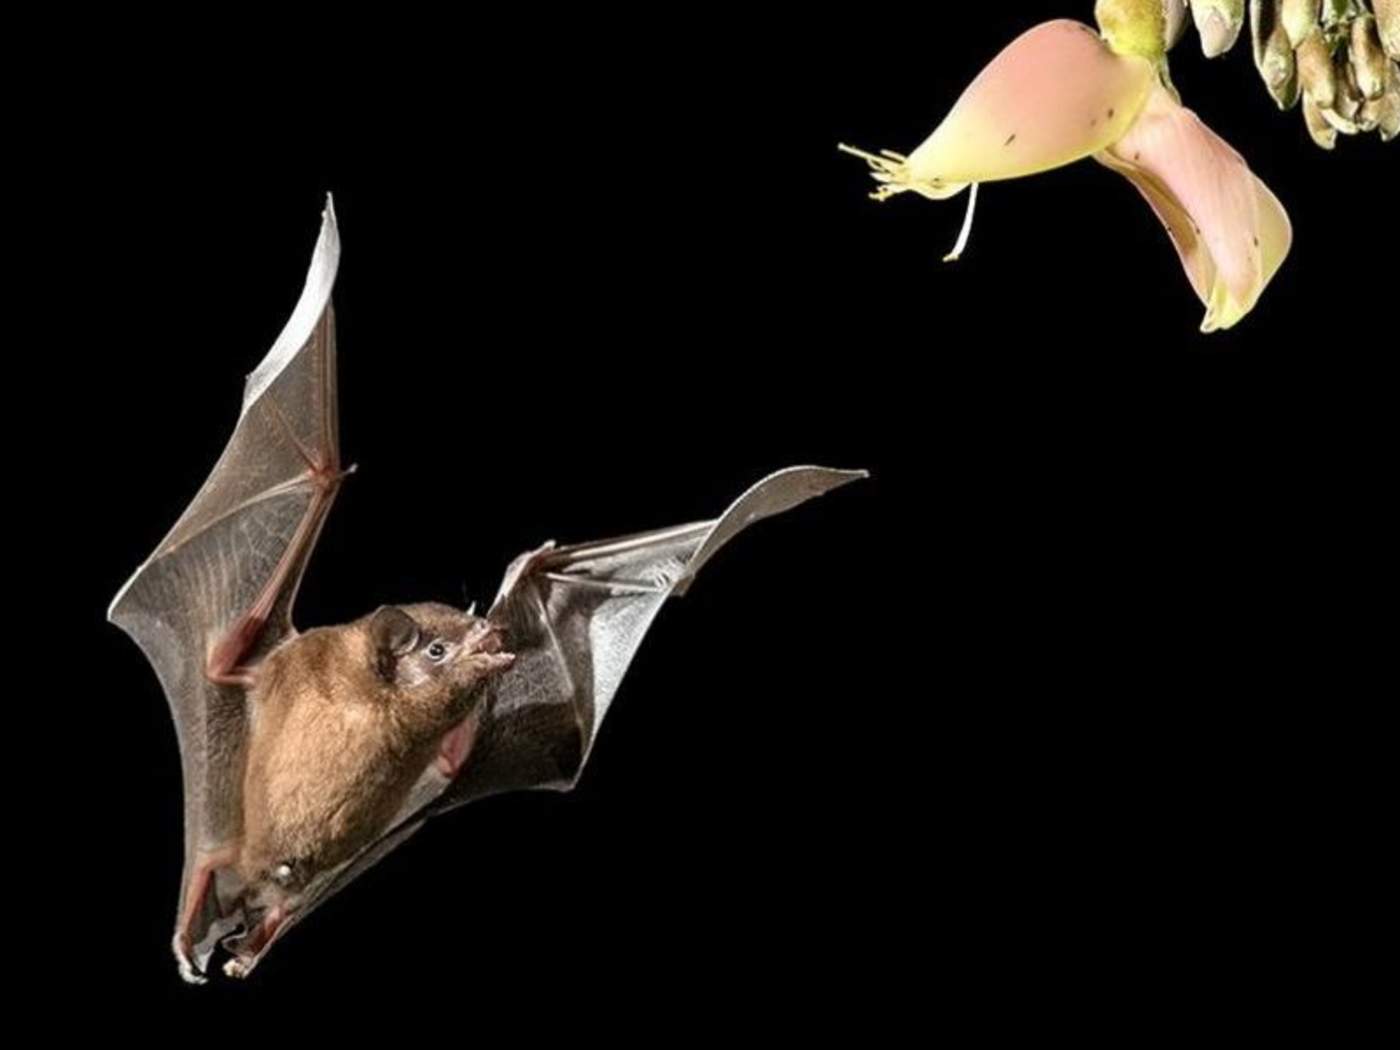 La increíble imagen de un murciélago bebiendo néctar